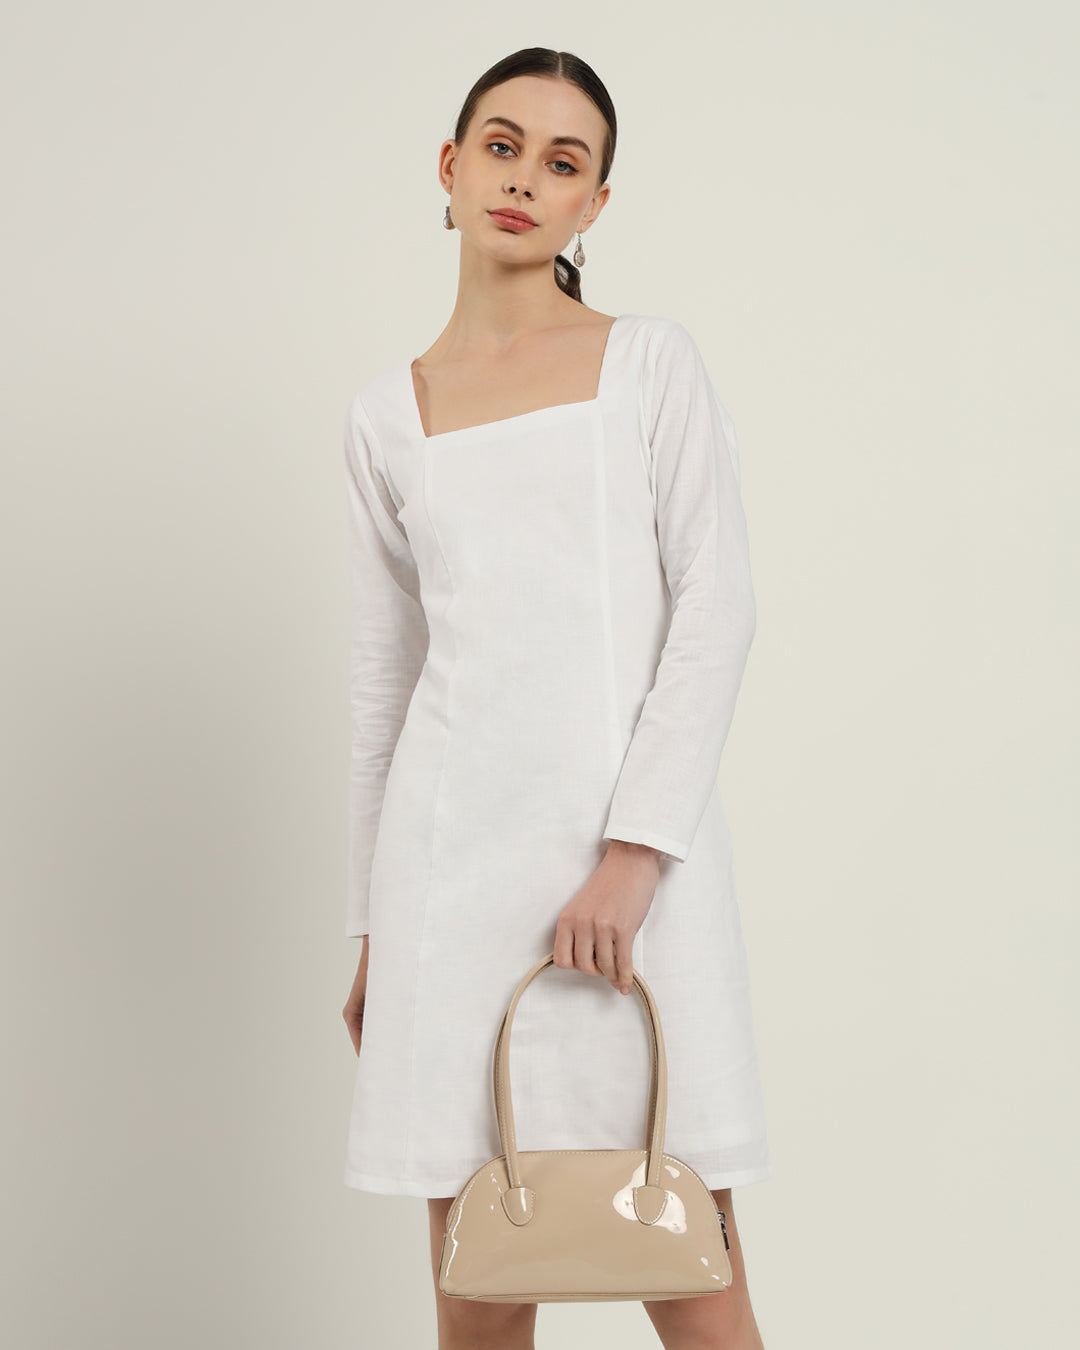 The Auburn White Linen Dress